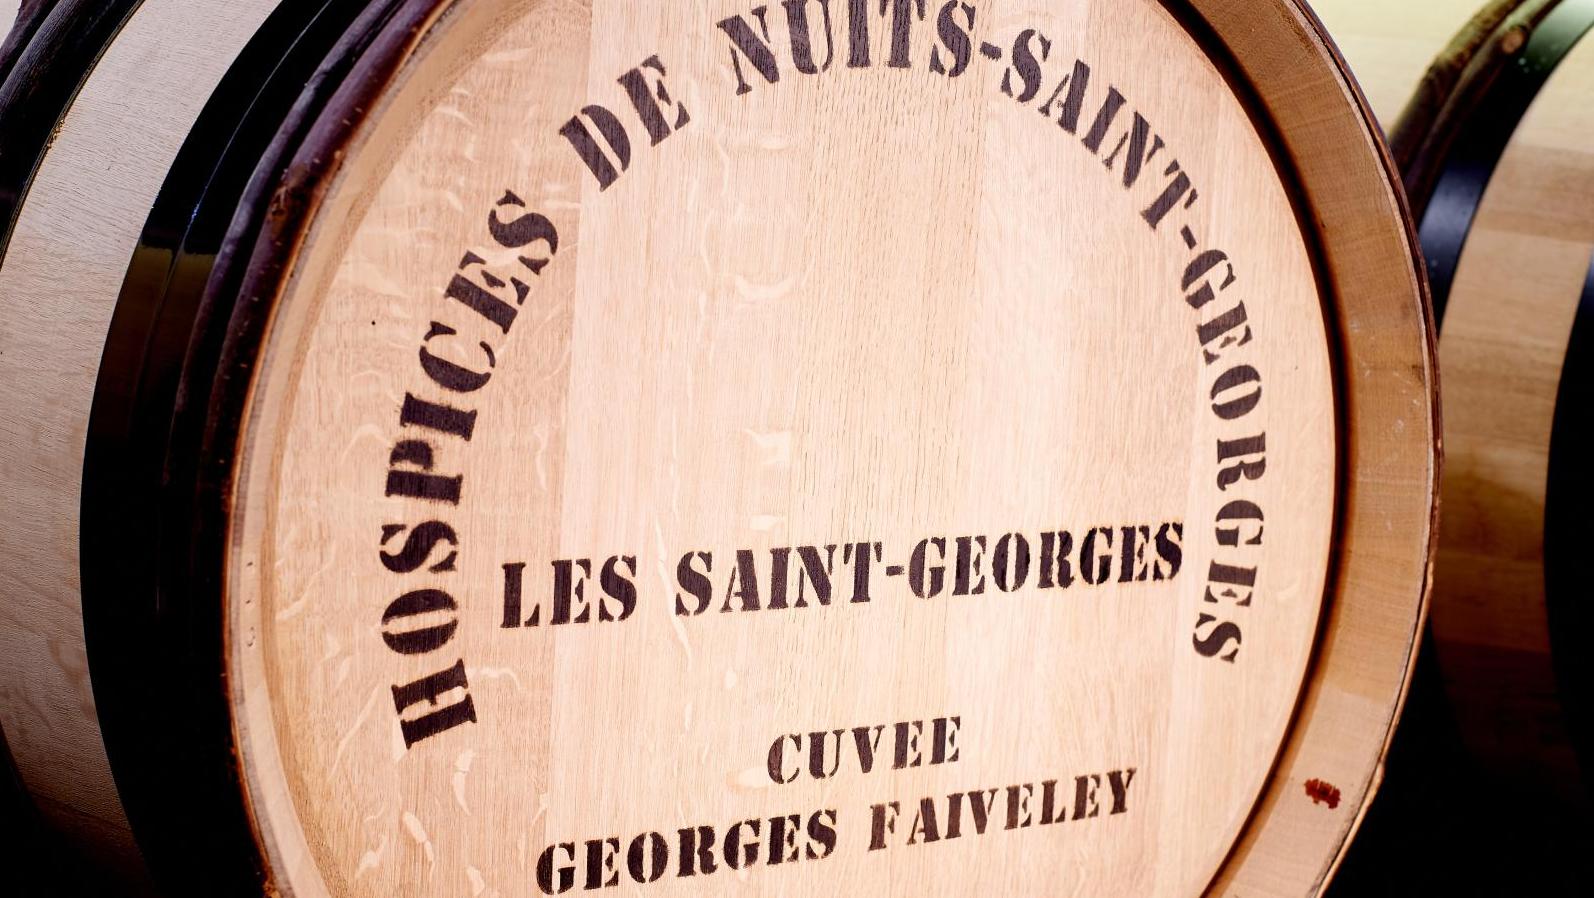 Nuits-Saint-Georges premier cru Les Saint-Georges, cuvée Georges Faiveley, 2019.... A Nuits-Saint-Georges, des pièces très recherchées